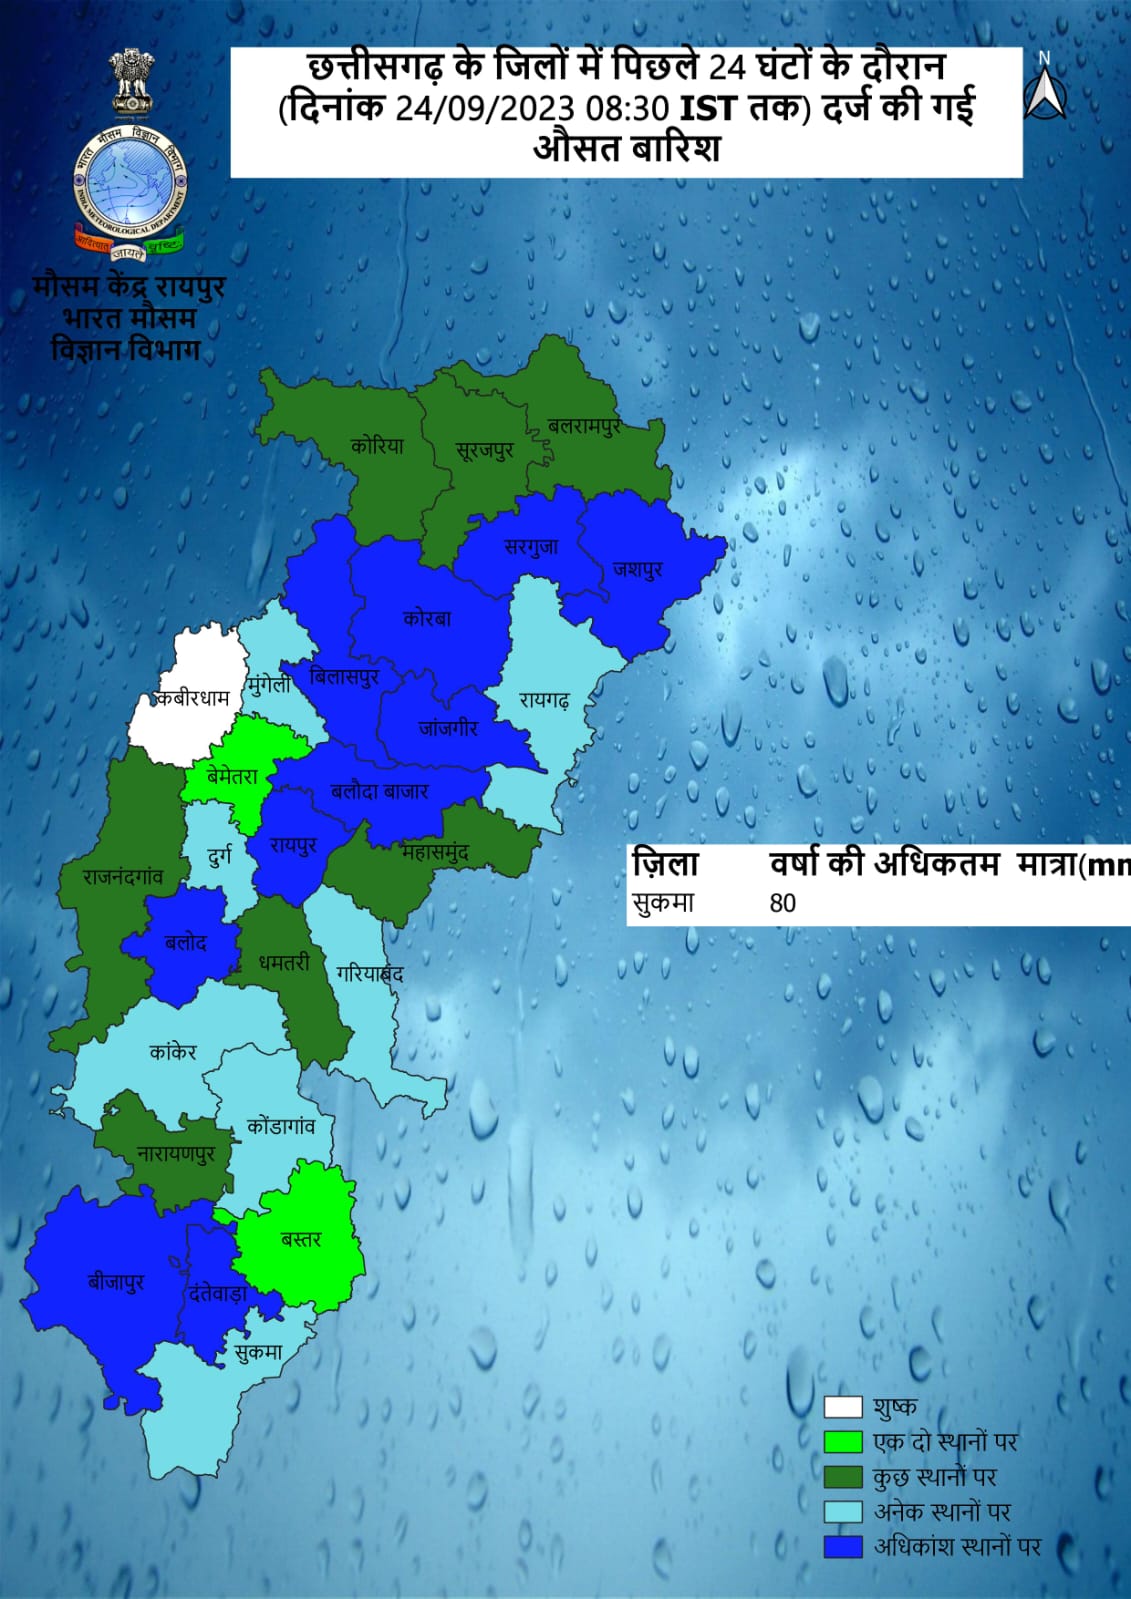 Chhattisgarh Weather : मौसम में बदलाव ,1 दर्जन जिलों में वर्षा-बिजली, 6 जिलों में येलो अलर्ट, जानें पूरे हफ्ते का हाल-IMD का नया अपडेट